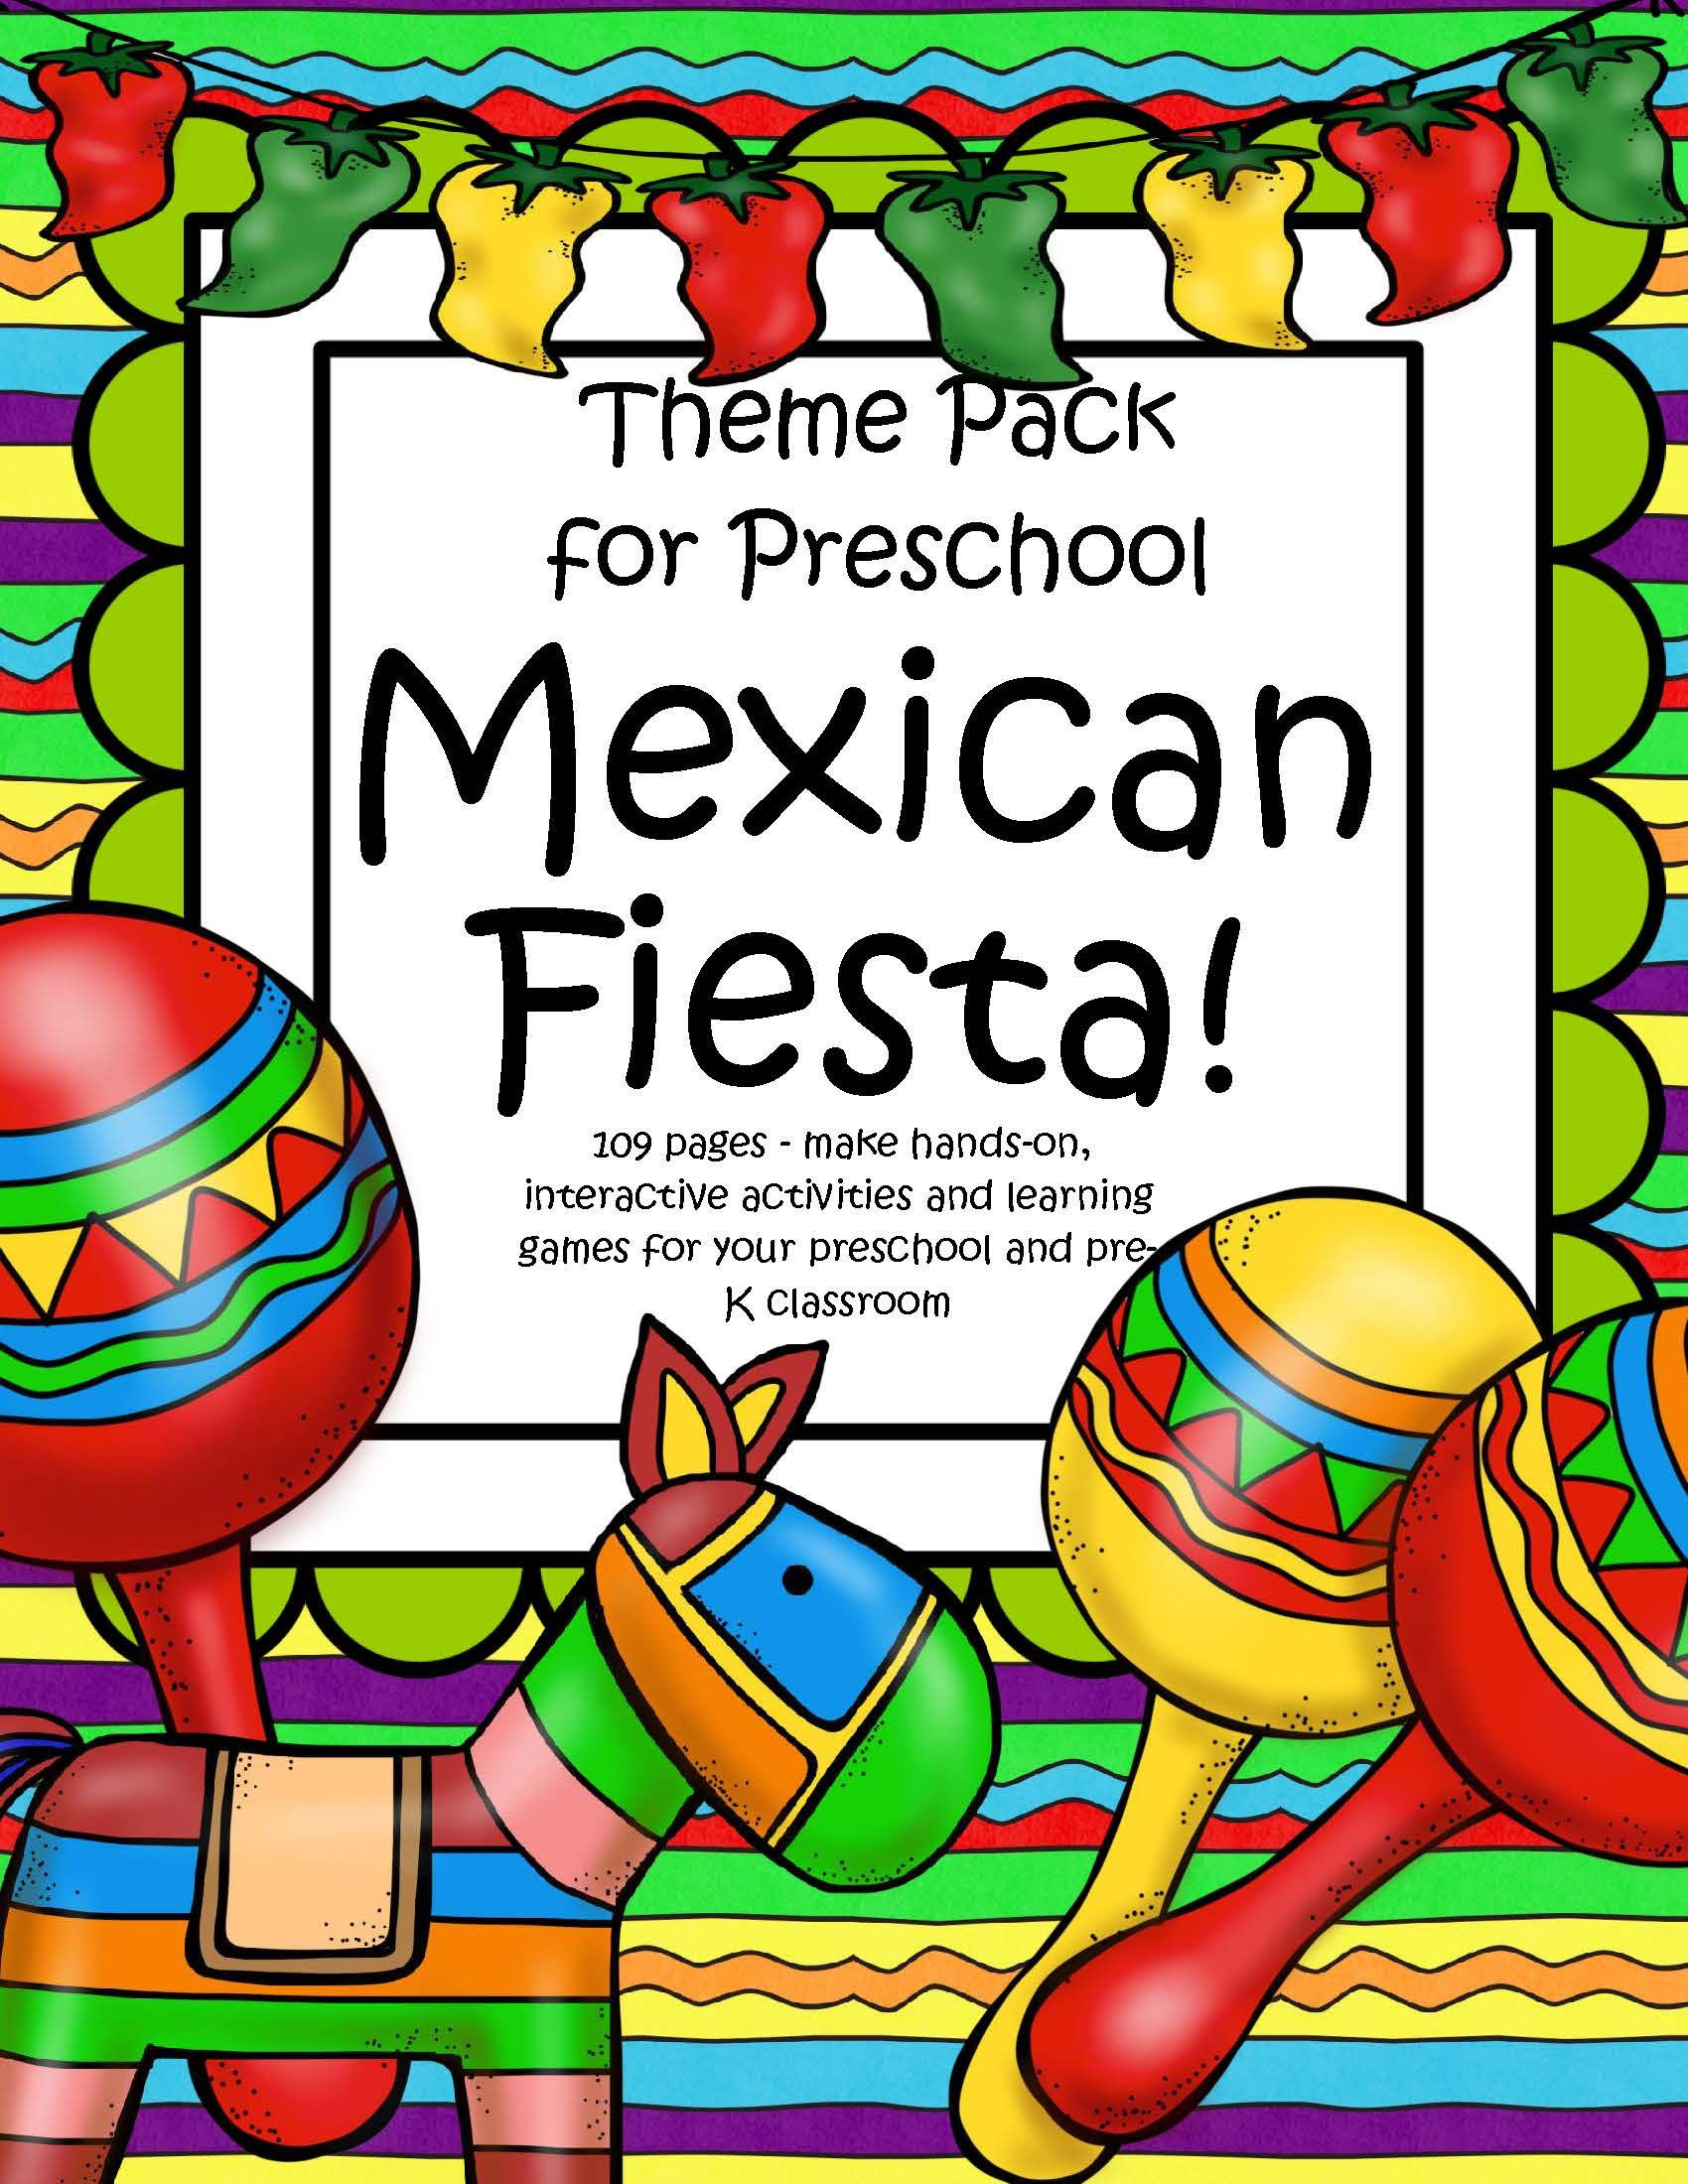 Cinco De Mayo Activities For Kindergarten
 Cinco de Mayo Fiesta Activities Centers and Printables for